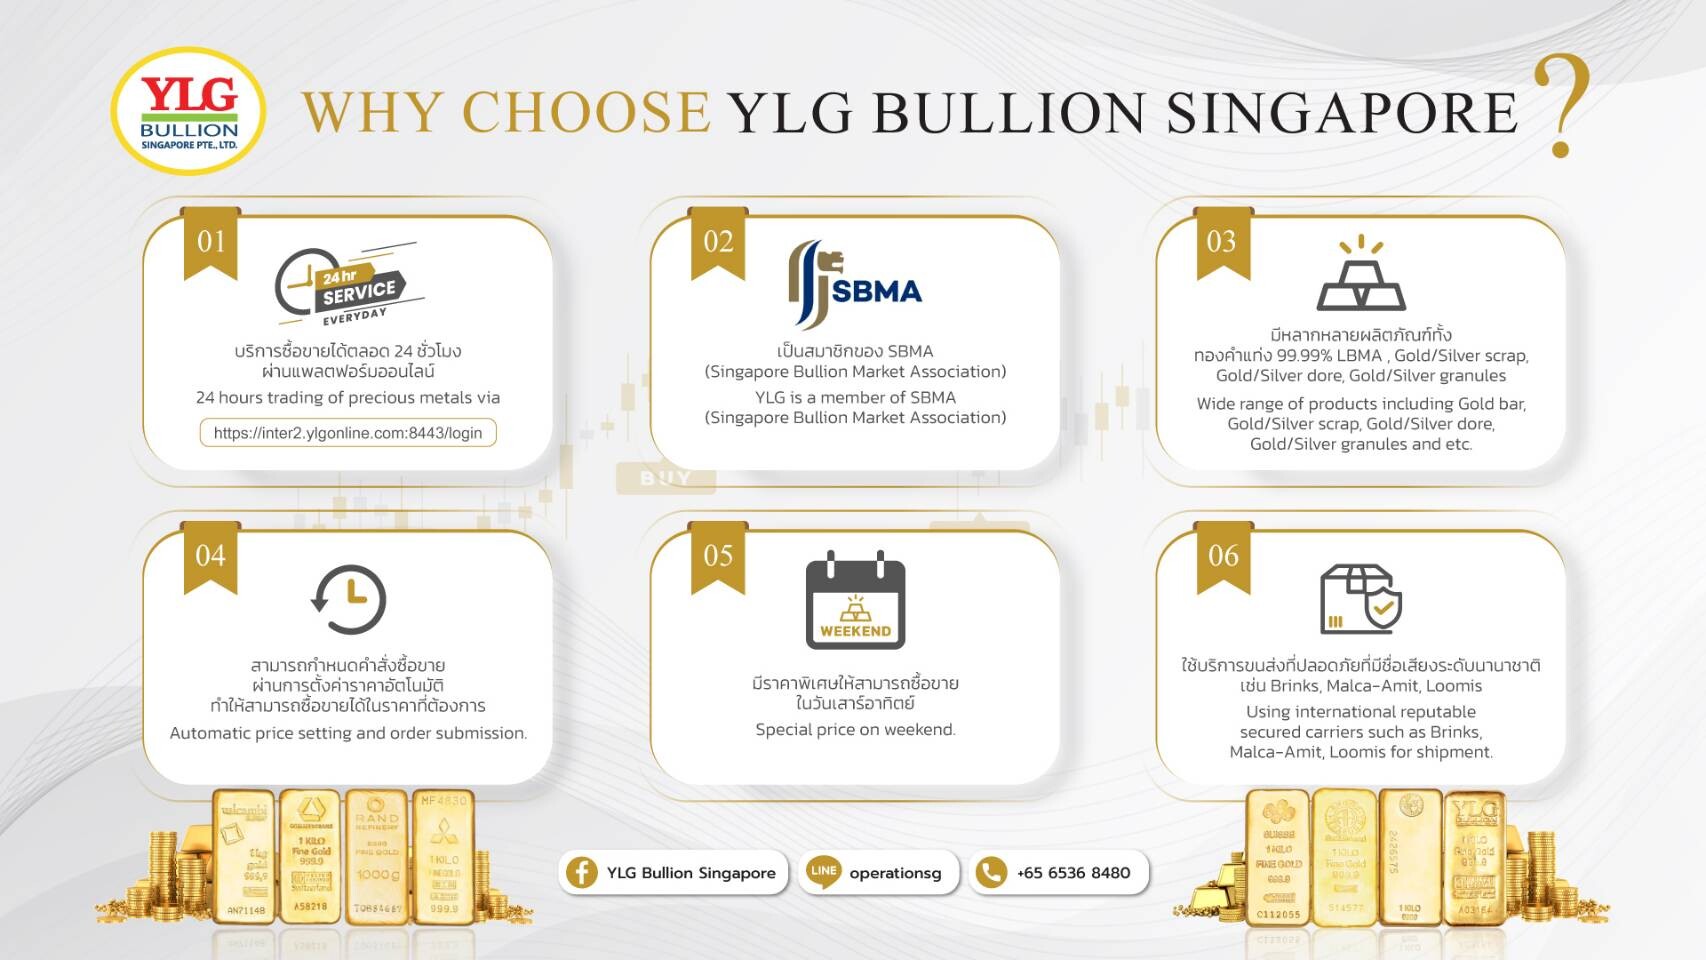 YLG Bullion Singapore คว้ารางวัลองค์กรระดับเอเชียจากเวทีJWA ขึ้นแท่นผู้นำธุรกิจทองคำครบวงจรในระดับอาเซียน